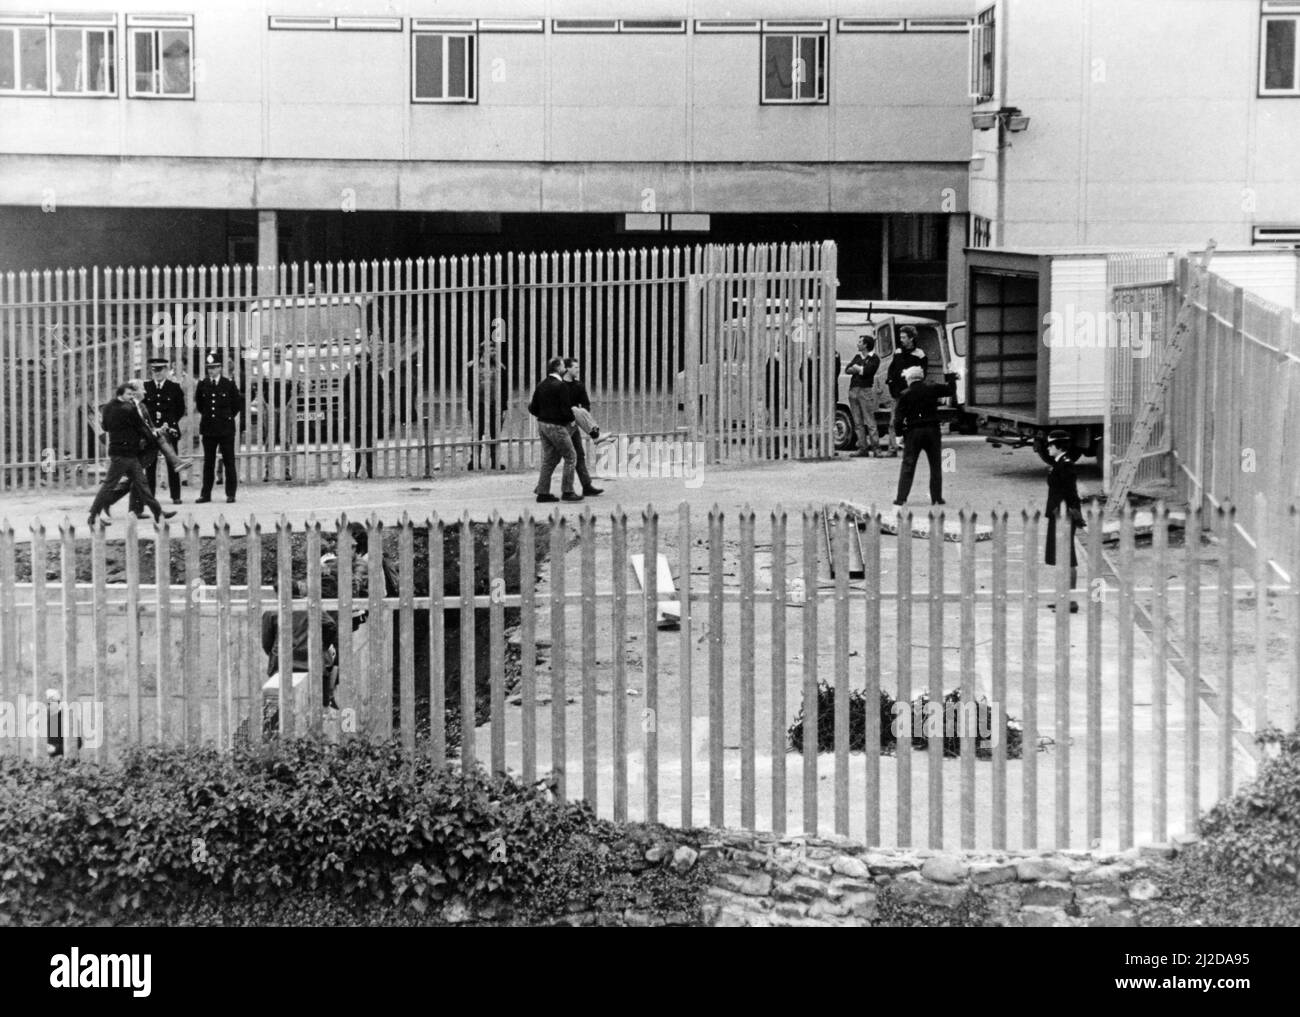 Les responsables de la sécurité transportent un démonstrateur pour louer des fourgonnettes afin des retirer du site du bunker nucléaire de Carmarthen. Octobre 1985. Banque D'Images